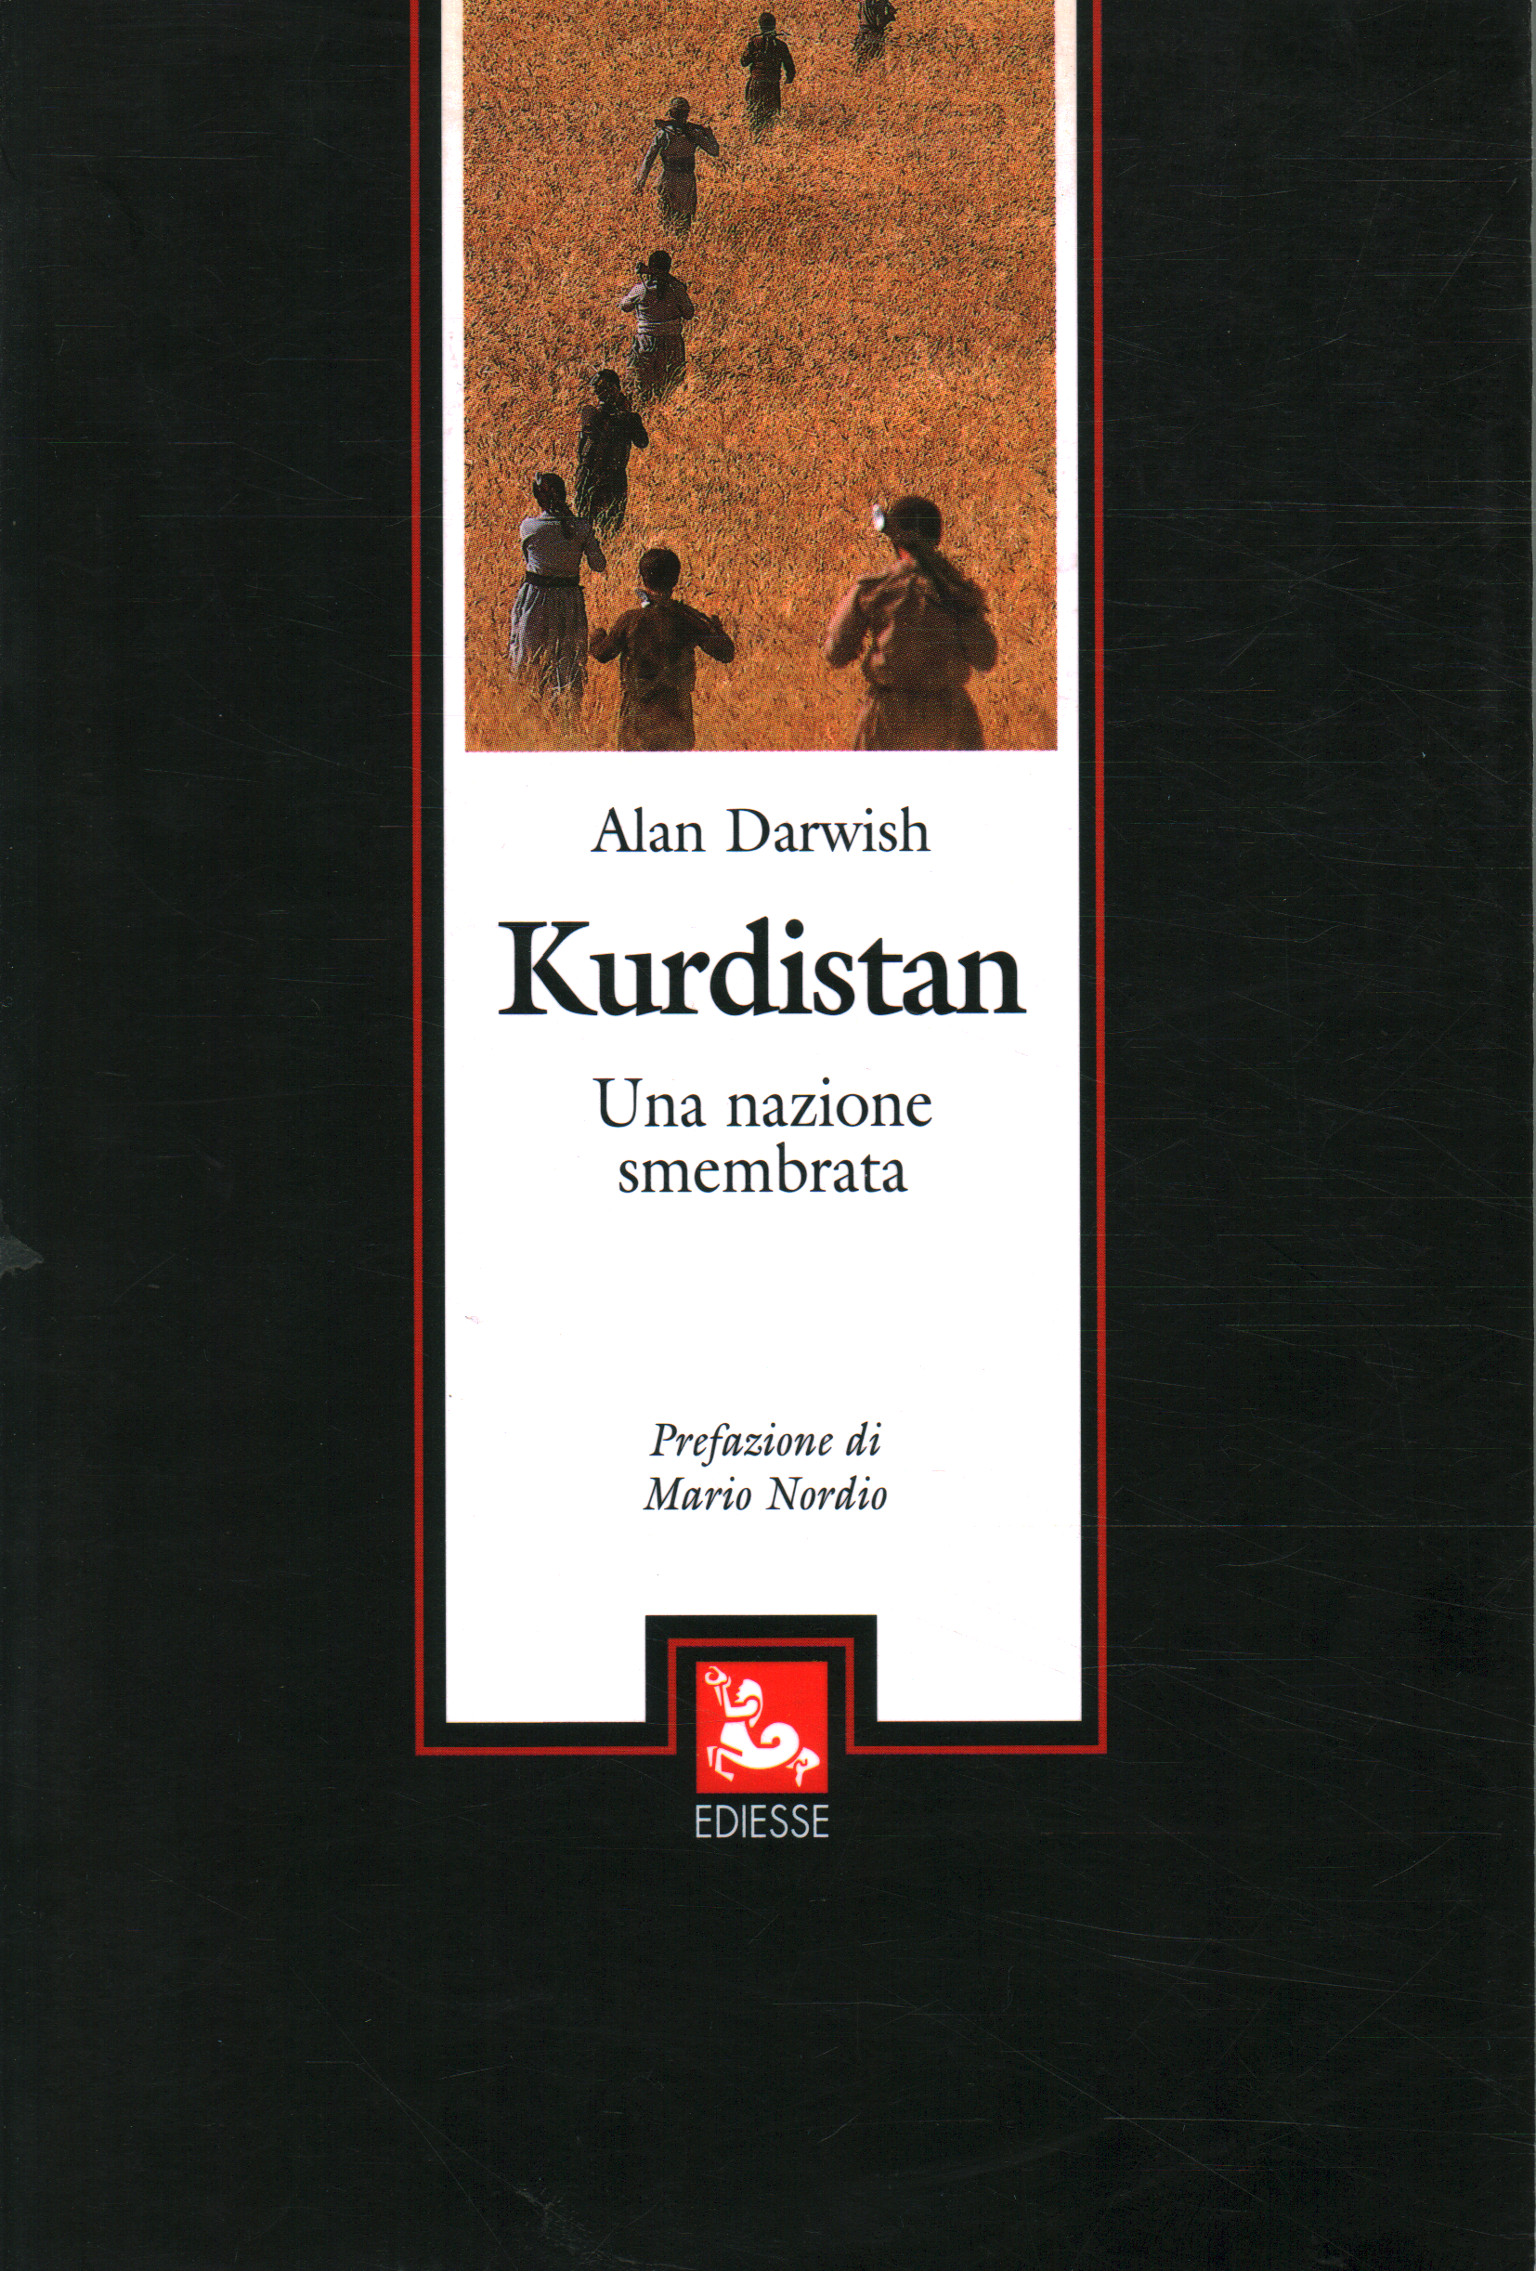 Kurdistan, Alan Darwish